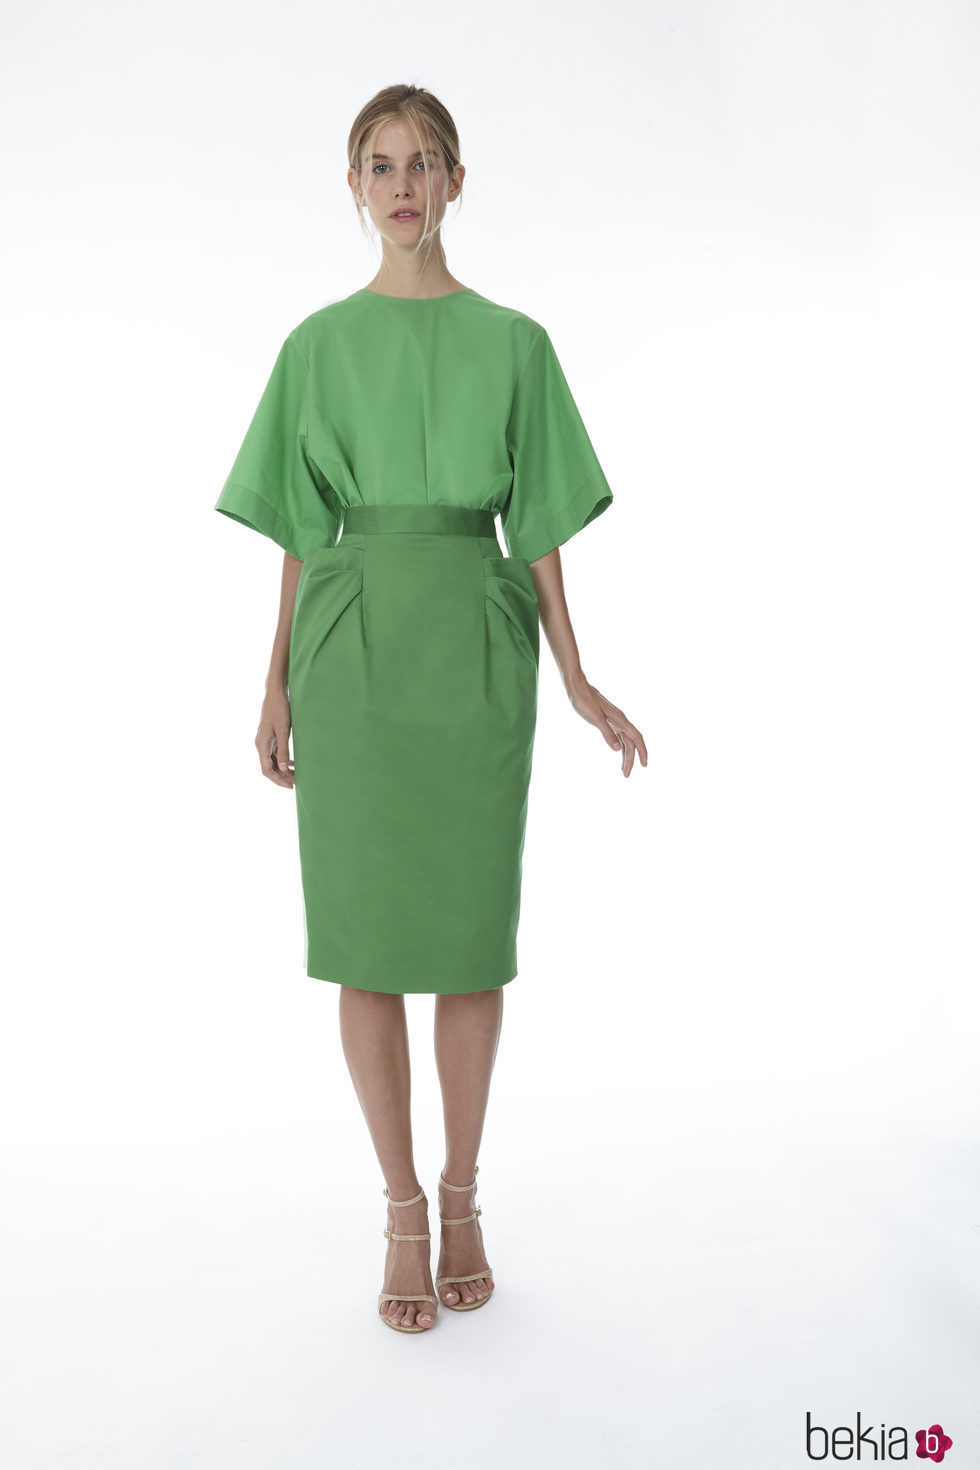 Falda y blusa color verde de la colección 'Resort 18' de '2ND LAB by The 2nd Skin Co'